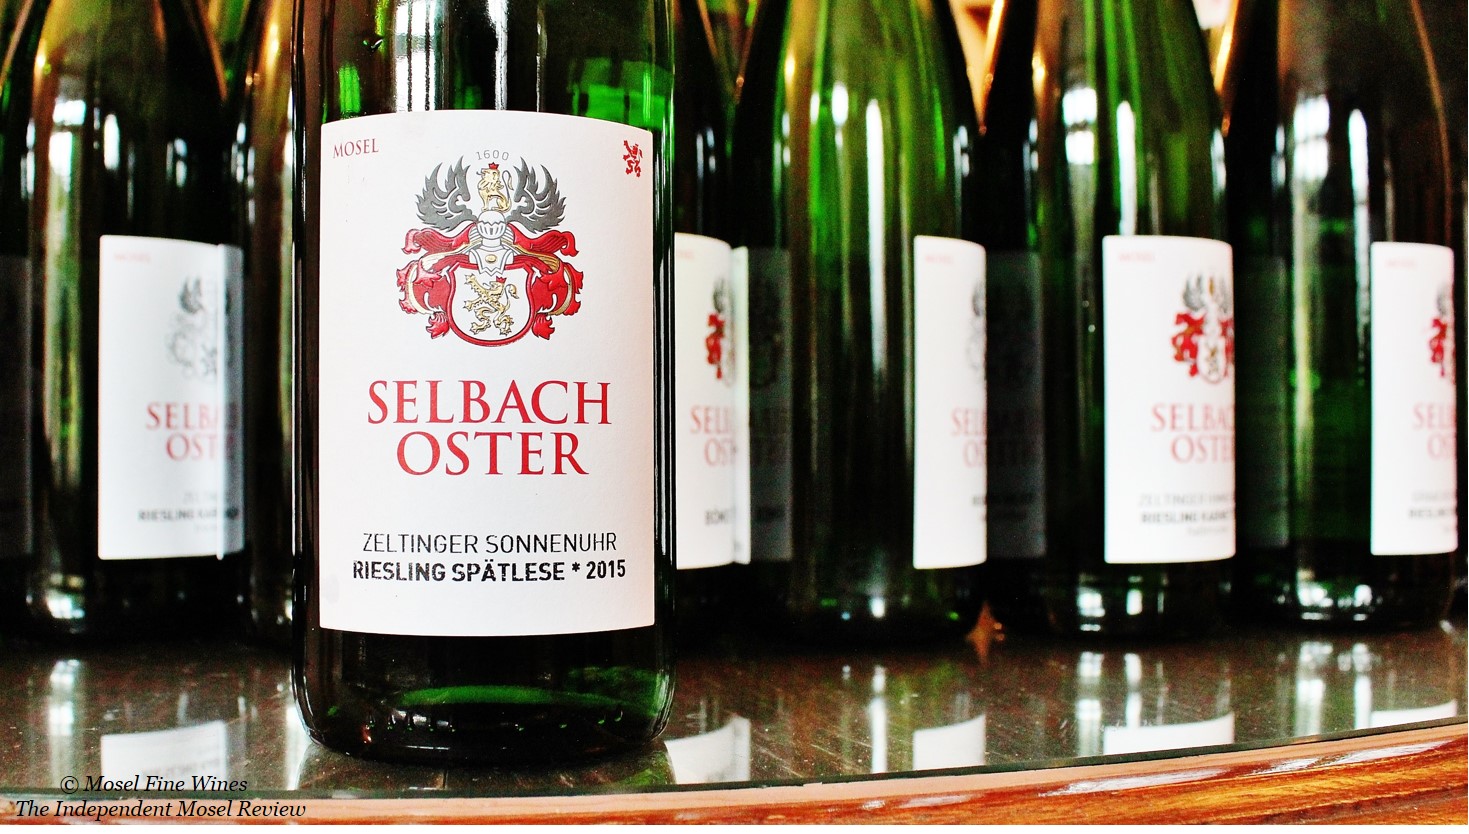 Weingut Selbach-Oster | Zeltinger Sonnenuhr Riesling Spätlese * 2015 | Label